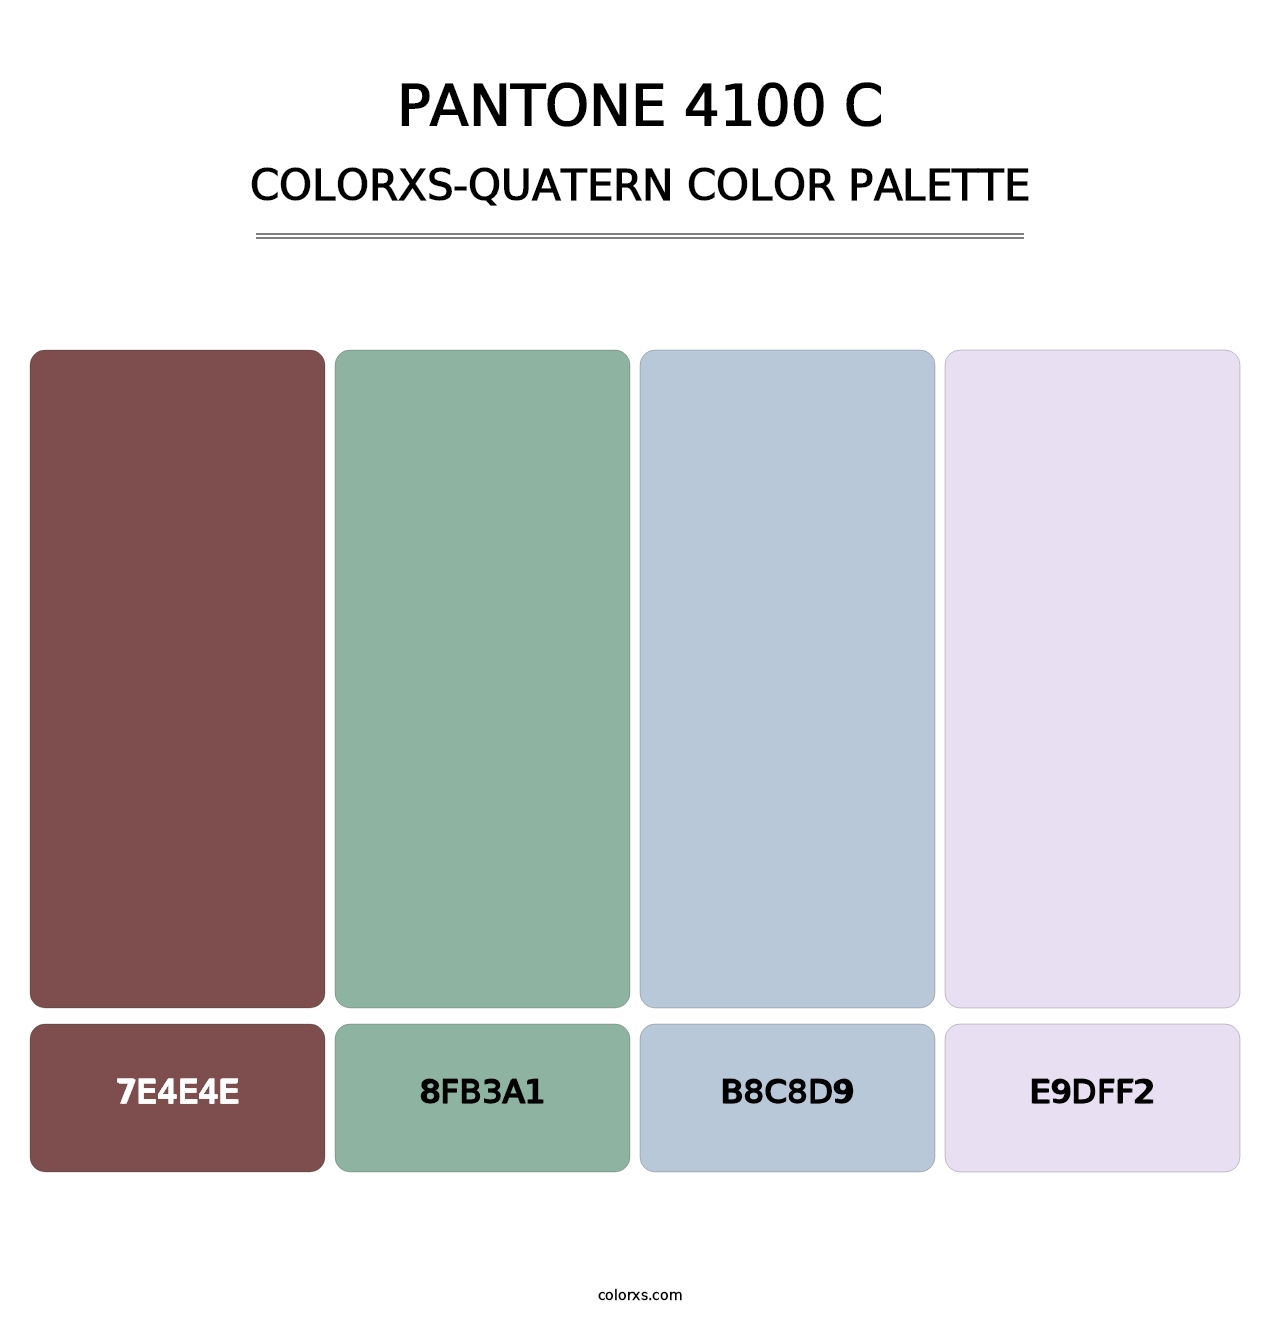 PANTONE 4100 C - Colorxs Quatern Palette